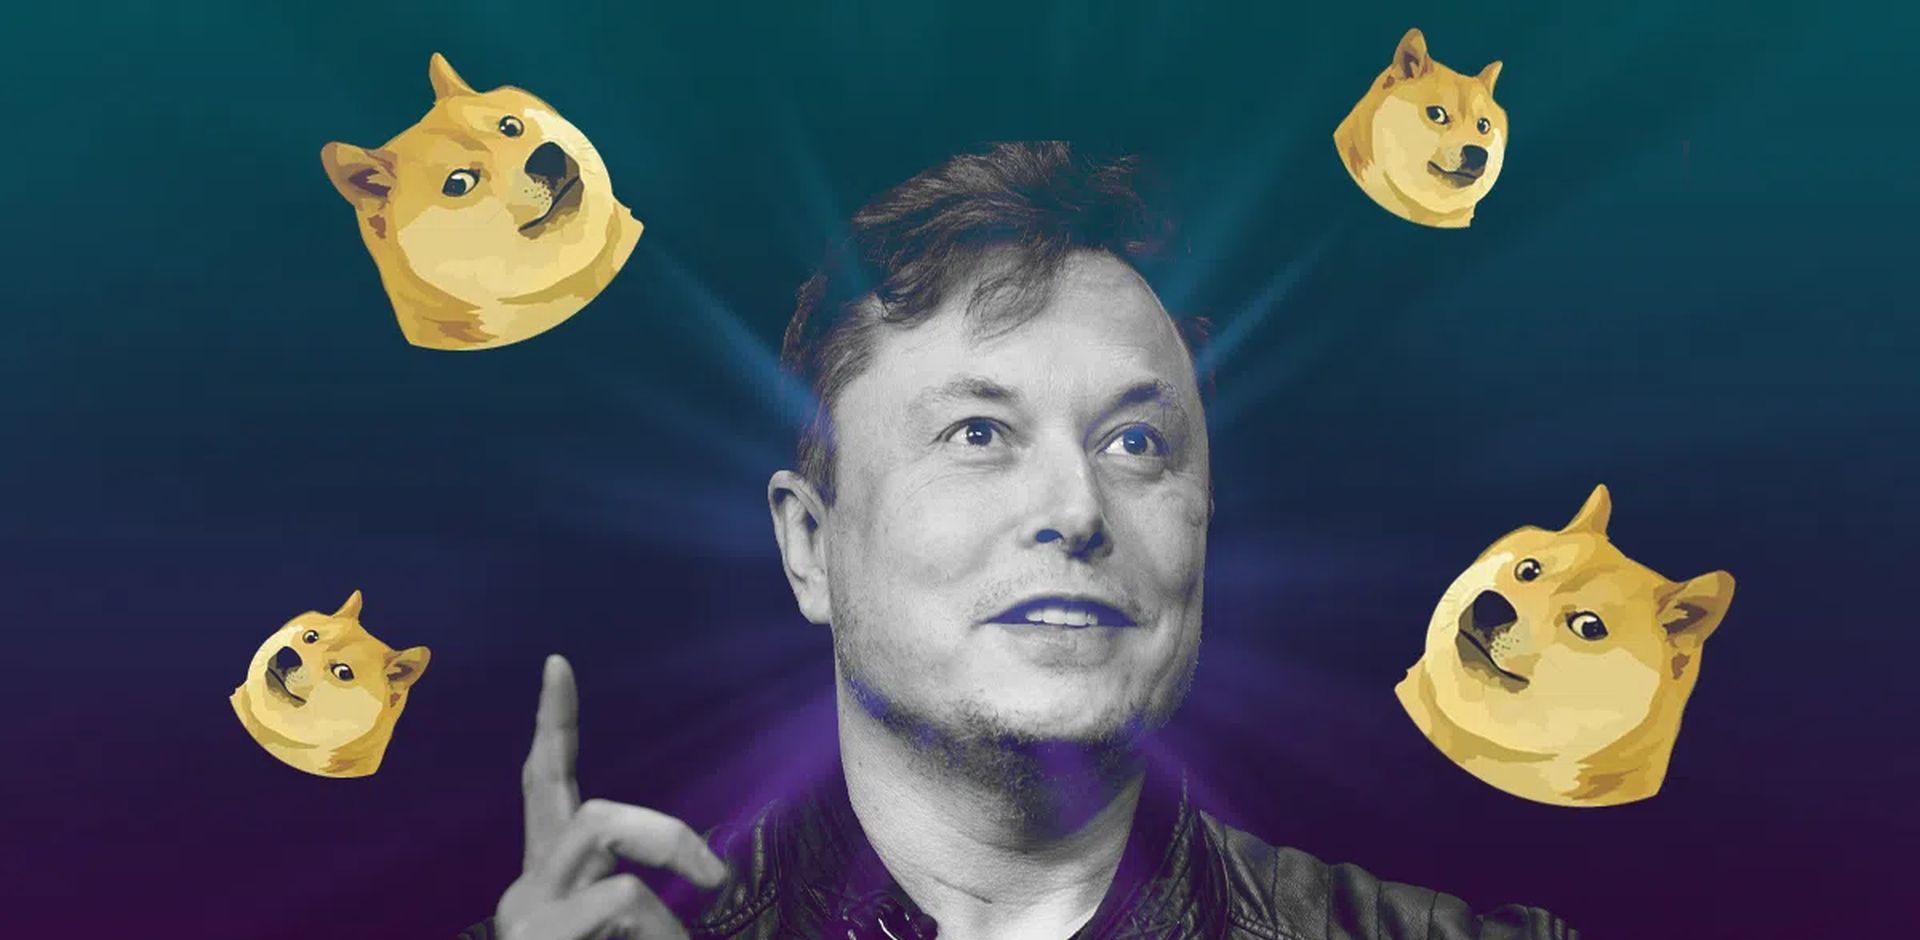 Nawet po tym, jak Elon Musk pozwał do sądu w sprawie piramidy Dogecoin, mówi, że "Będę dalej wspierał Dogecoin" a także twierdzi, że nadal kupuje.